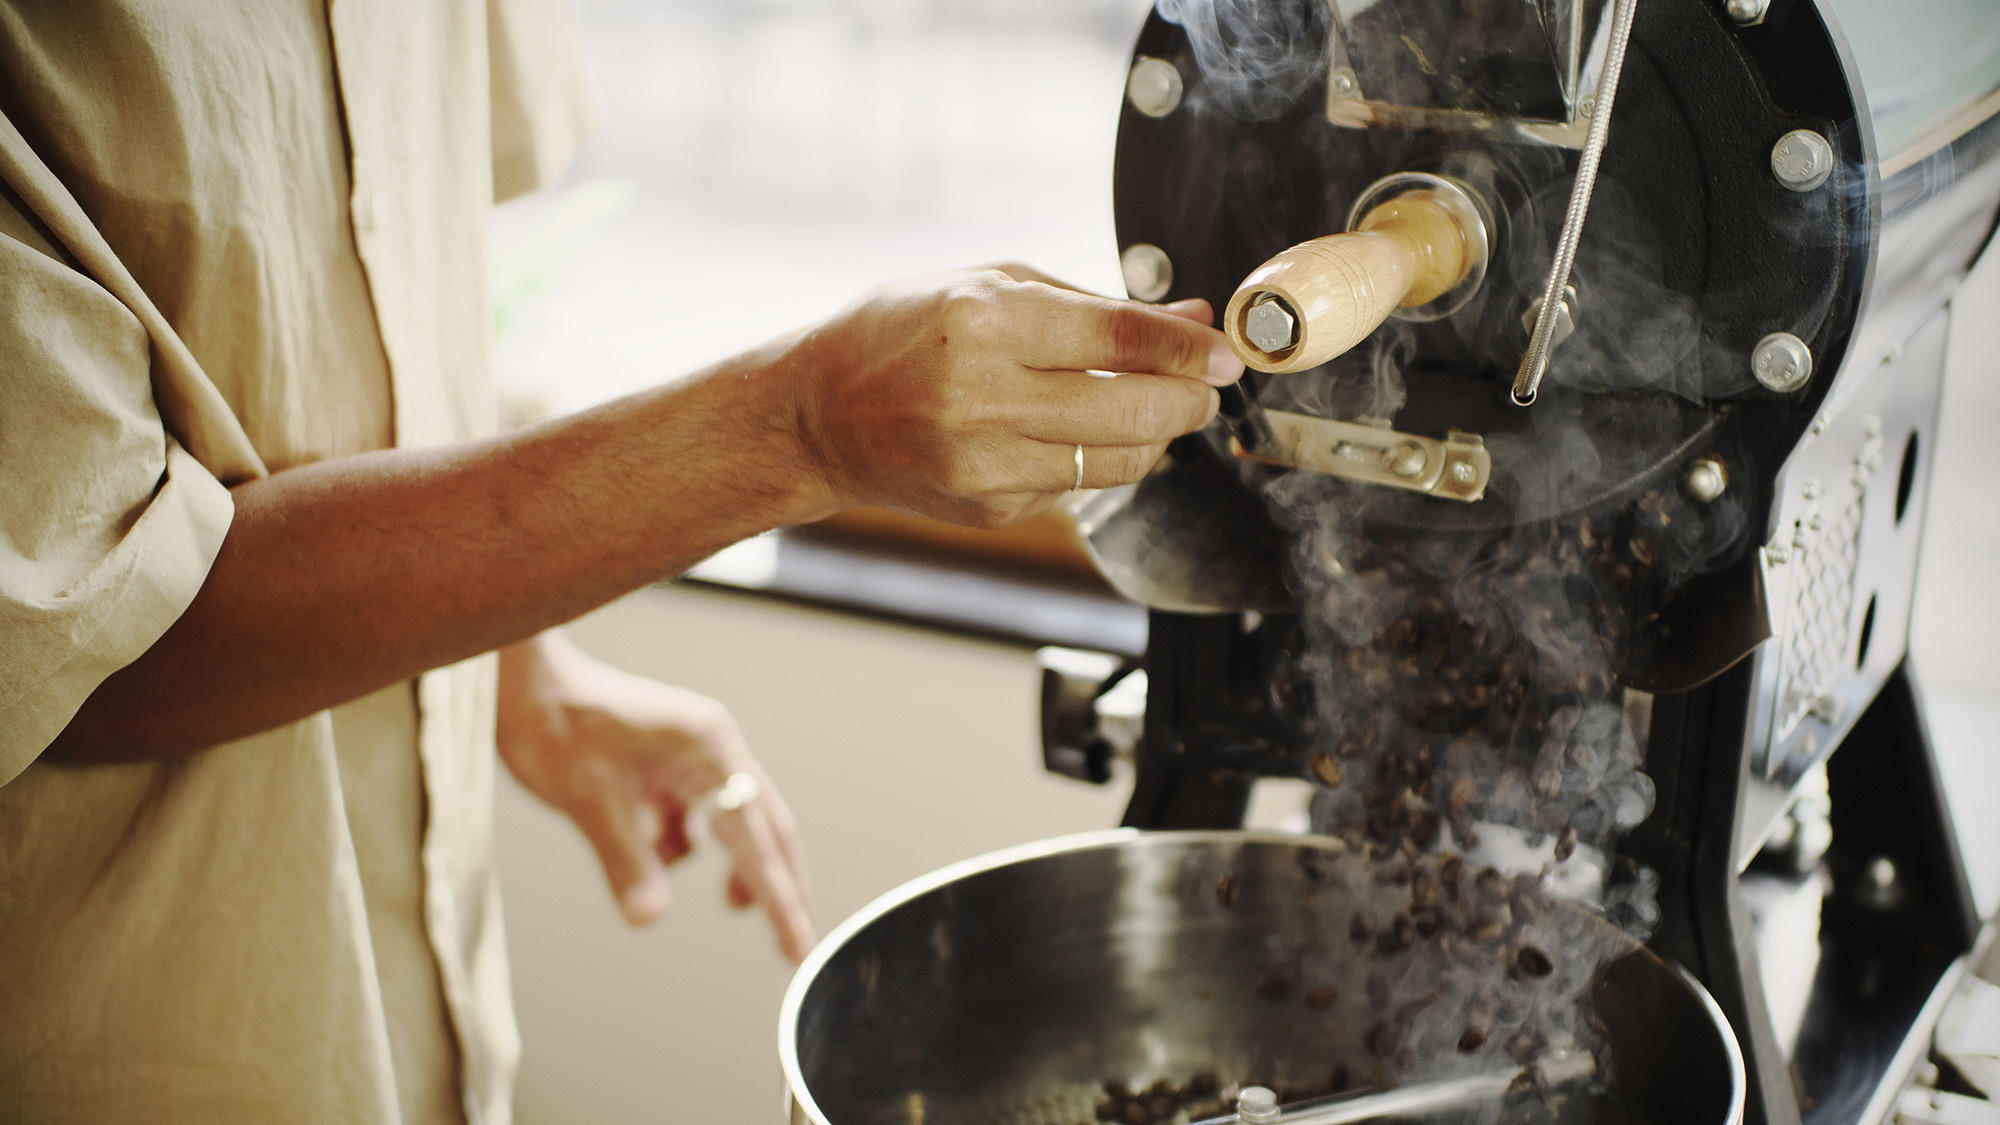 ・【食事】宮古島で自家焙煎しているHASABA COFFEE監修の美味しいコーヒーがいただけます